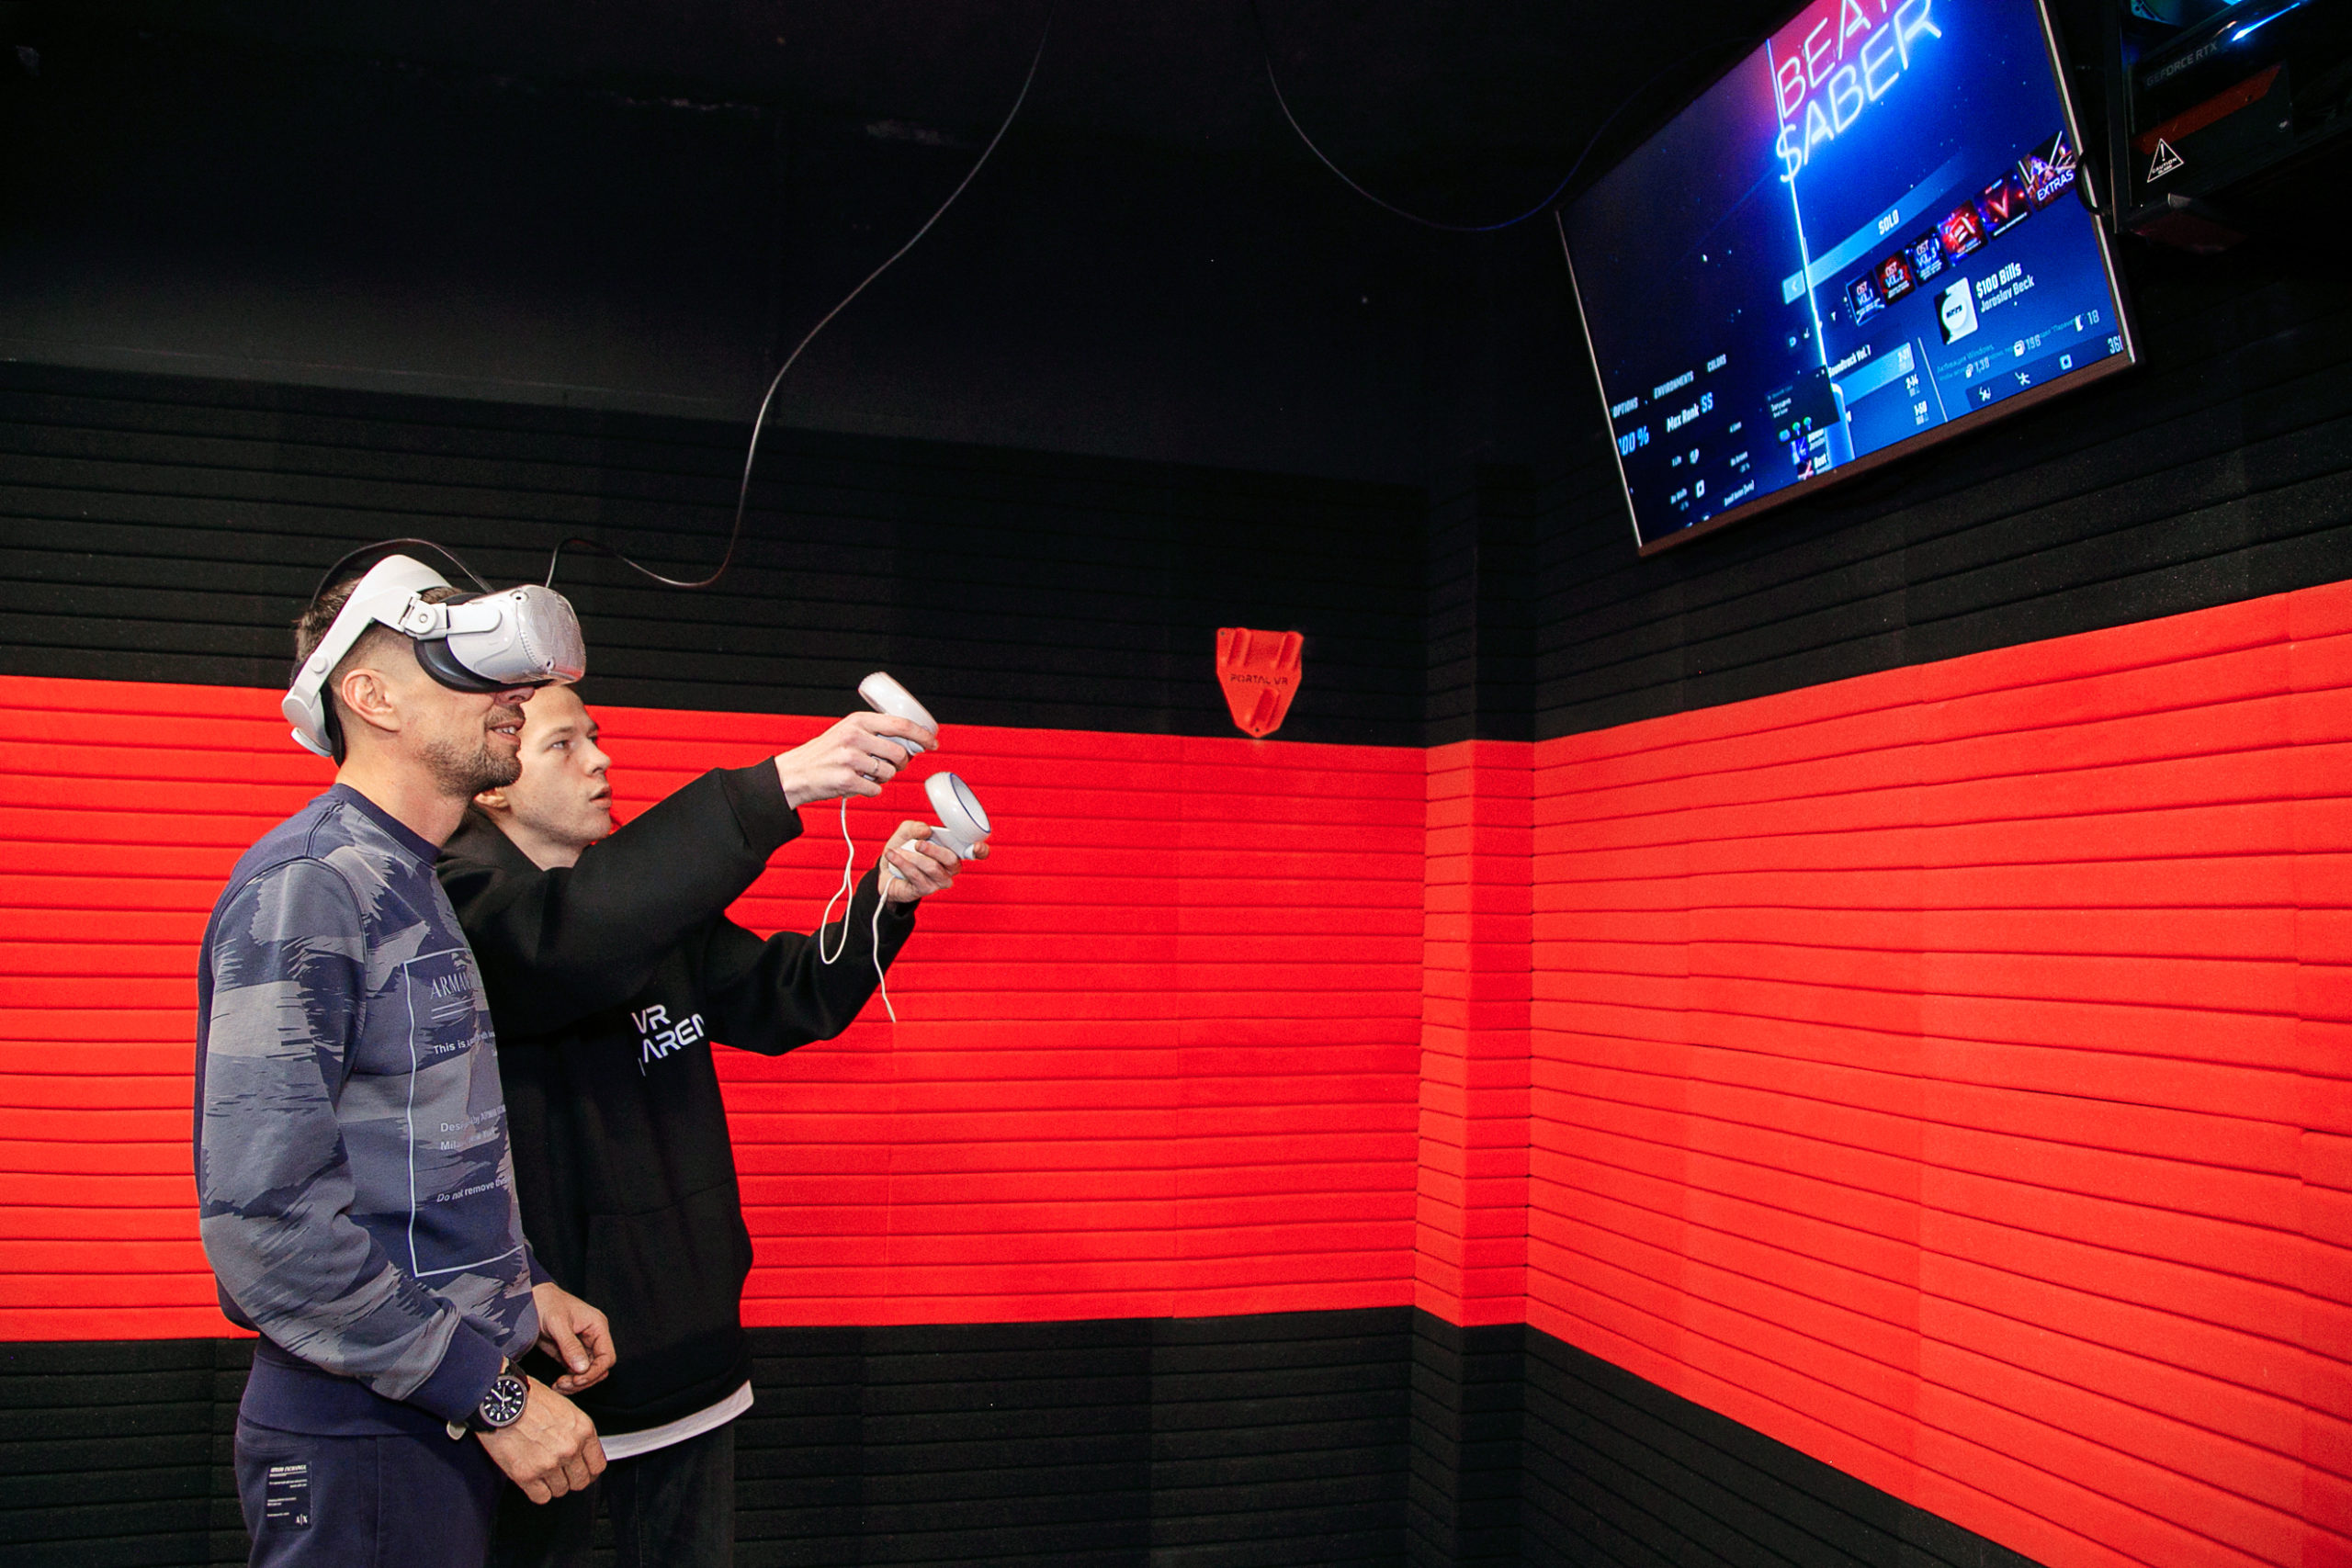 Арена виртуальной реальности для компании